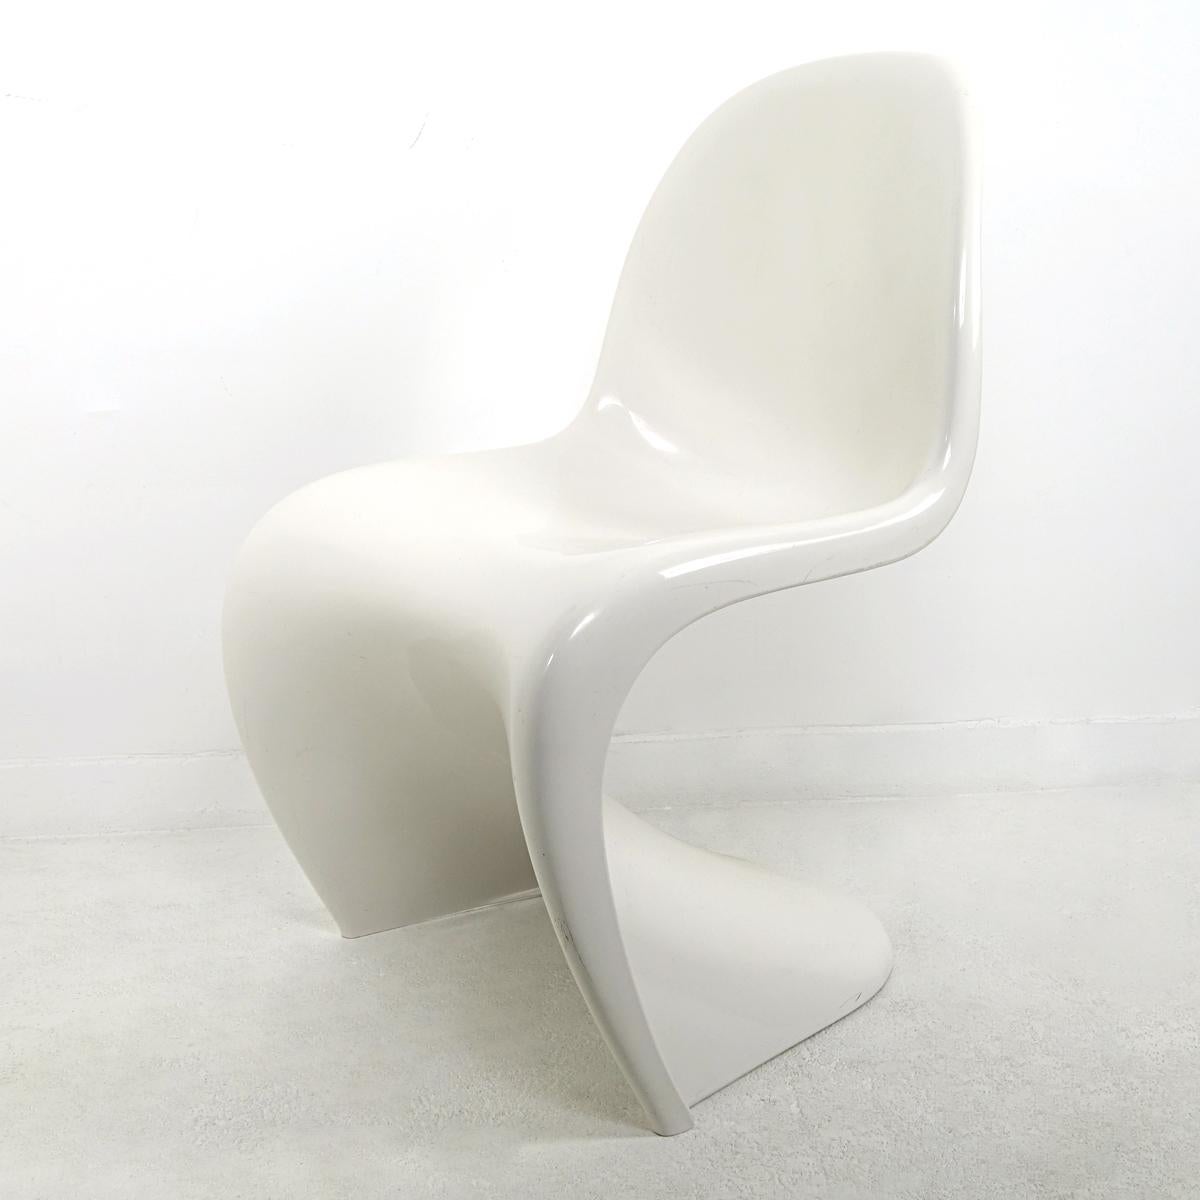 La chaise S de Verner Panton est l'une des stars absolues du pop art mobilier.
Il s'agit de la version originale de la production Herman Miller Fehlbaum dans le magnifique thermoplastique brillant qui convient si bien au design.